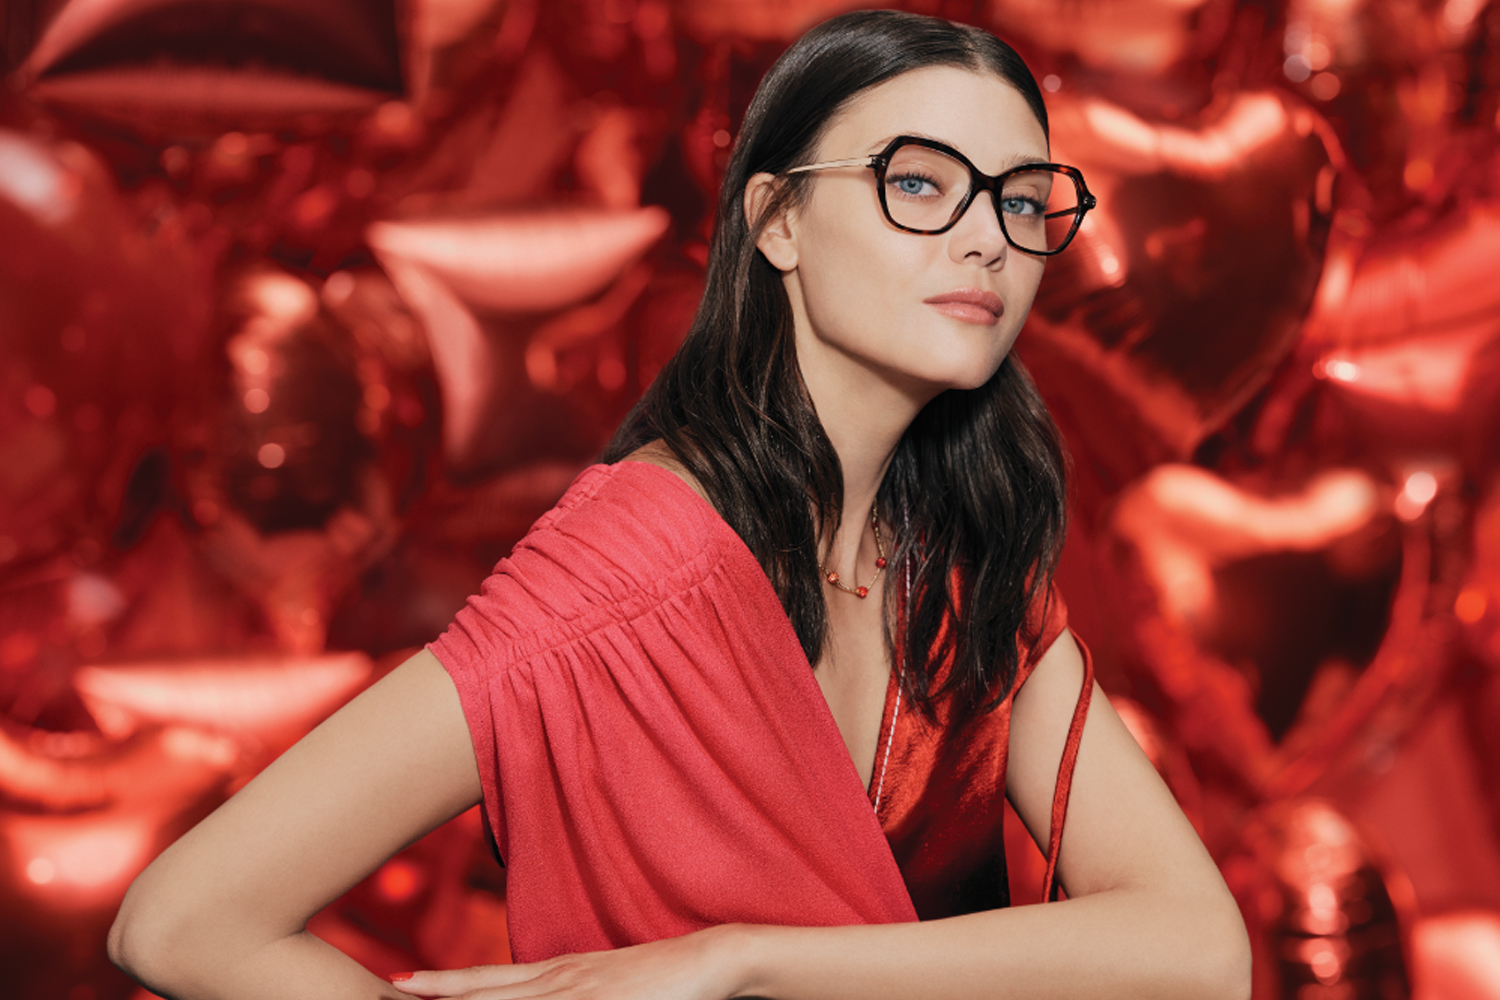 The 10 Designer Eyewear Styles We’re Shopping This Season